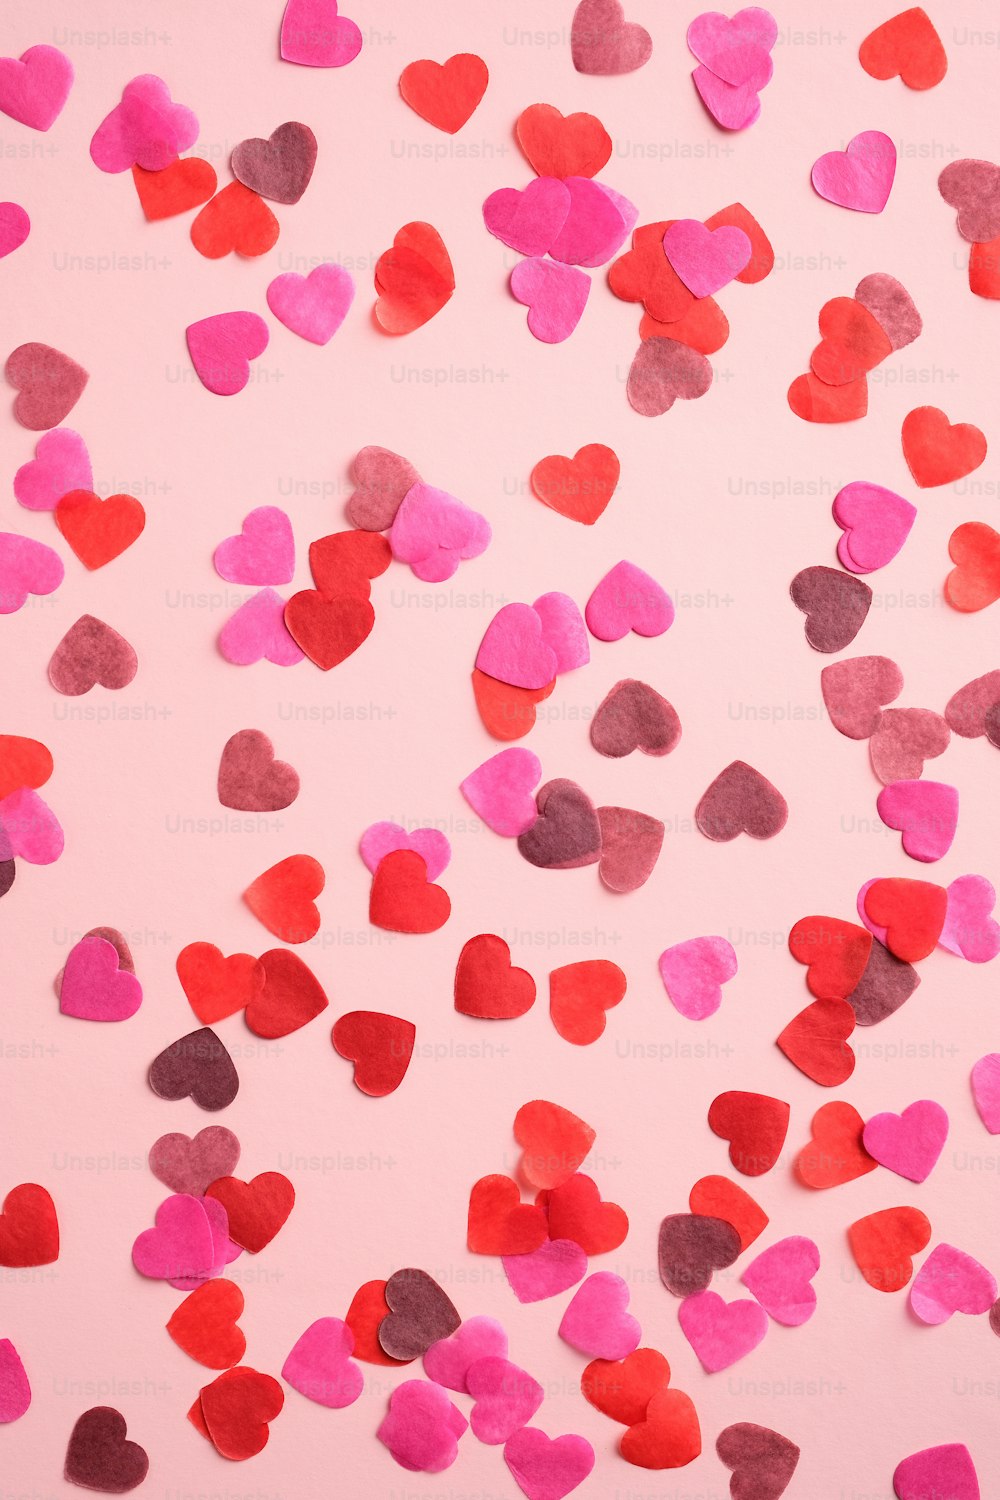 Patrón de San Valentín hecho de corazones sobre fondo rosa. Adecuado para banners verticales, volantes, folletos, historias en las redes sociales